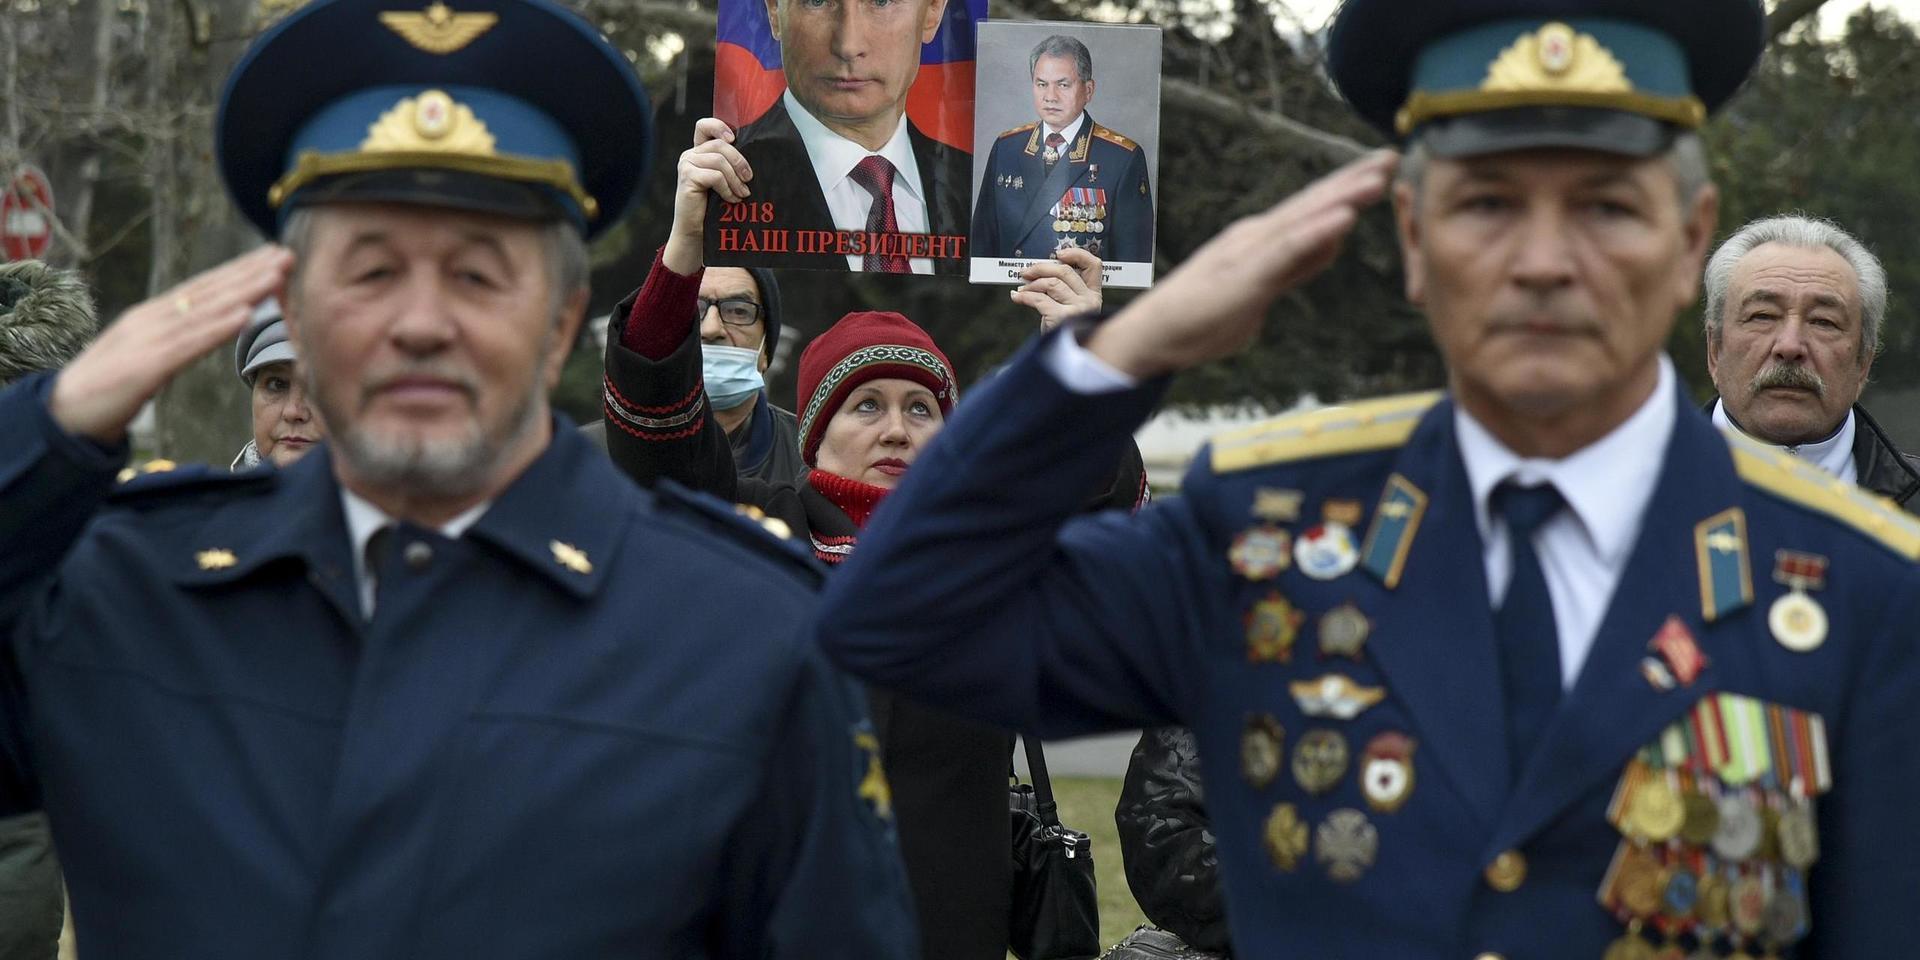 En kvinna håller upp porträtt av president Vladimir Putin och försvarsminister Sergej Shoigu bakom två militärveteraner vid en ceremoni i Sevastopol på Krim i vintras. Den ryska annekteringen är den viktigaste orsaken till spänningen med väst och Ryssland.